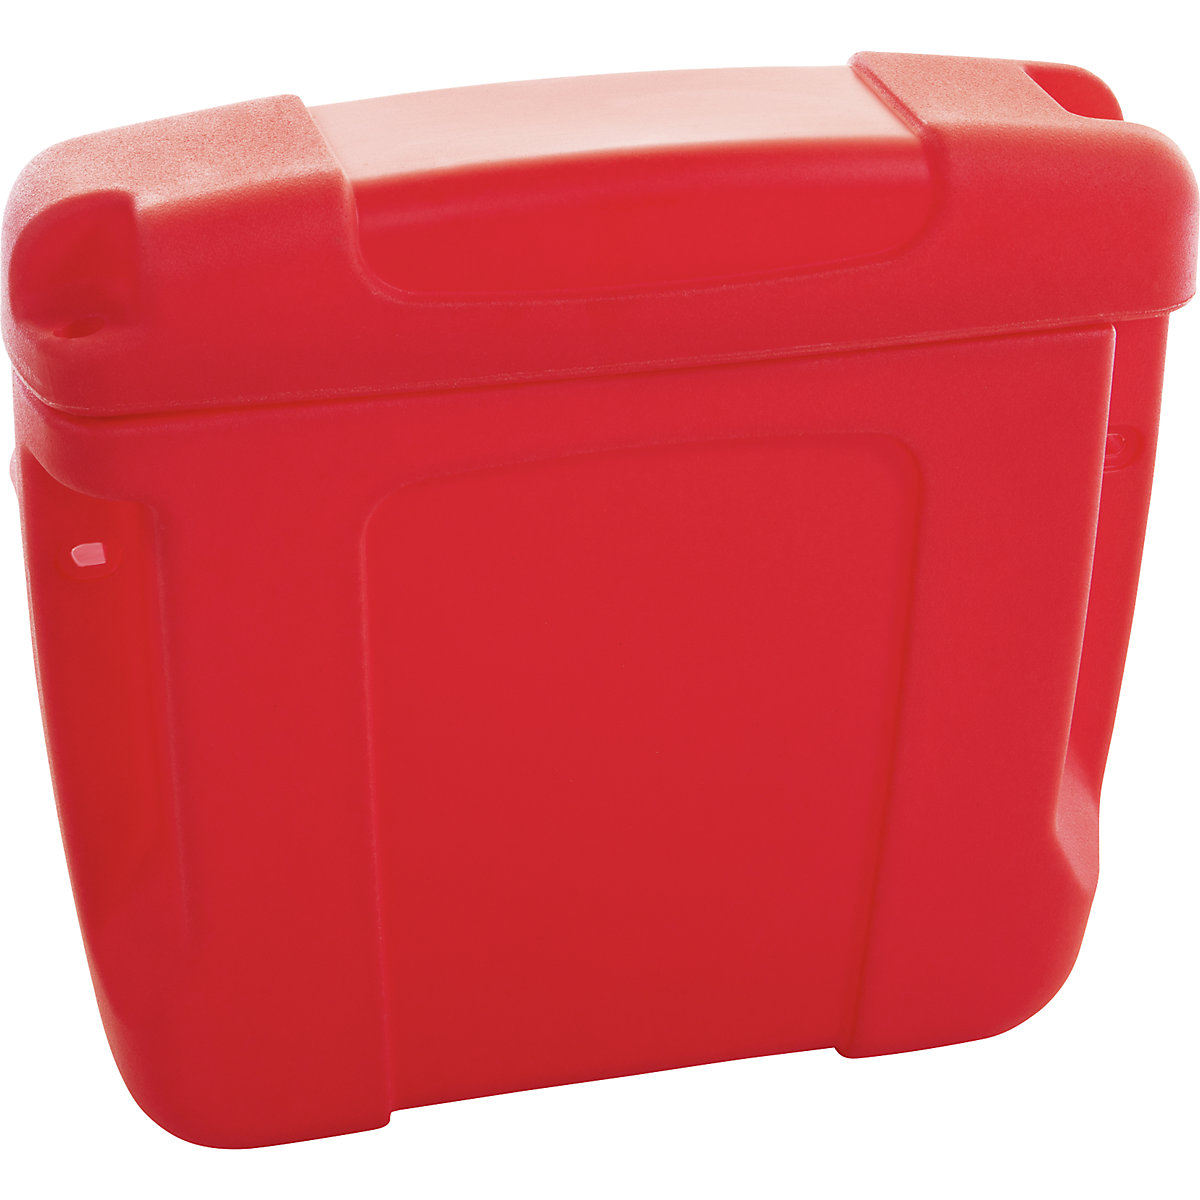 PE-documentenbox, voor binnen- en buitentoepassing, rood, vanaf 10 stuks-1